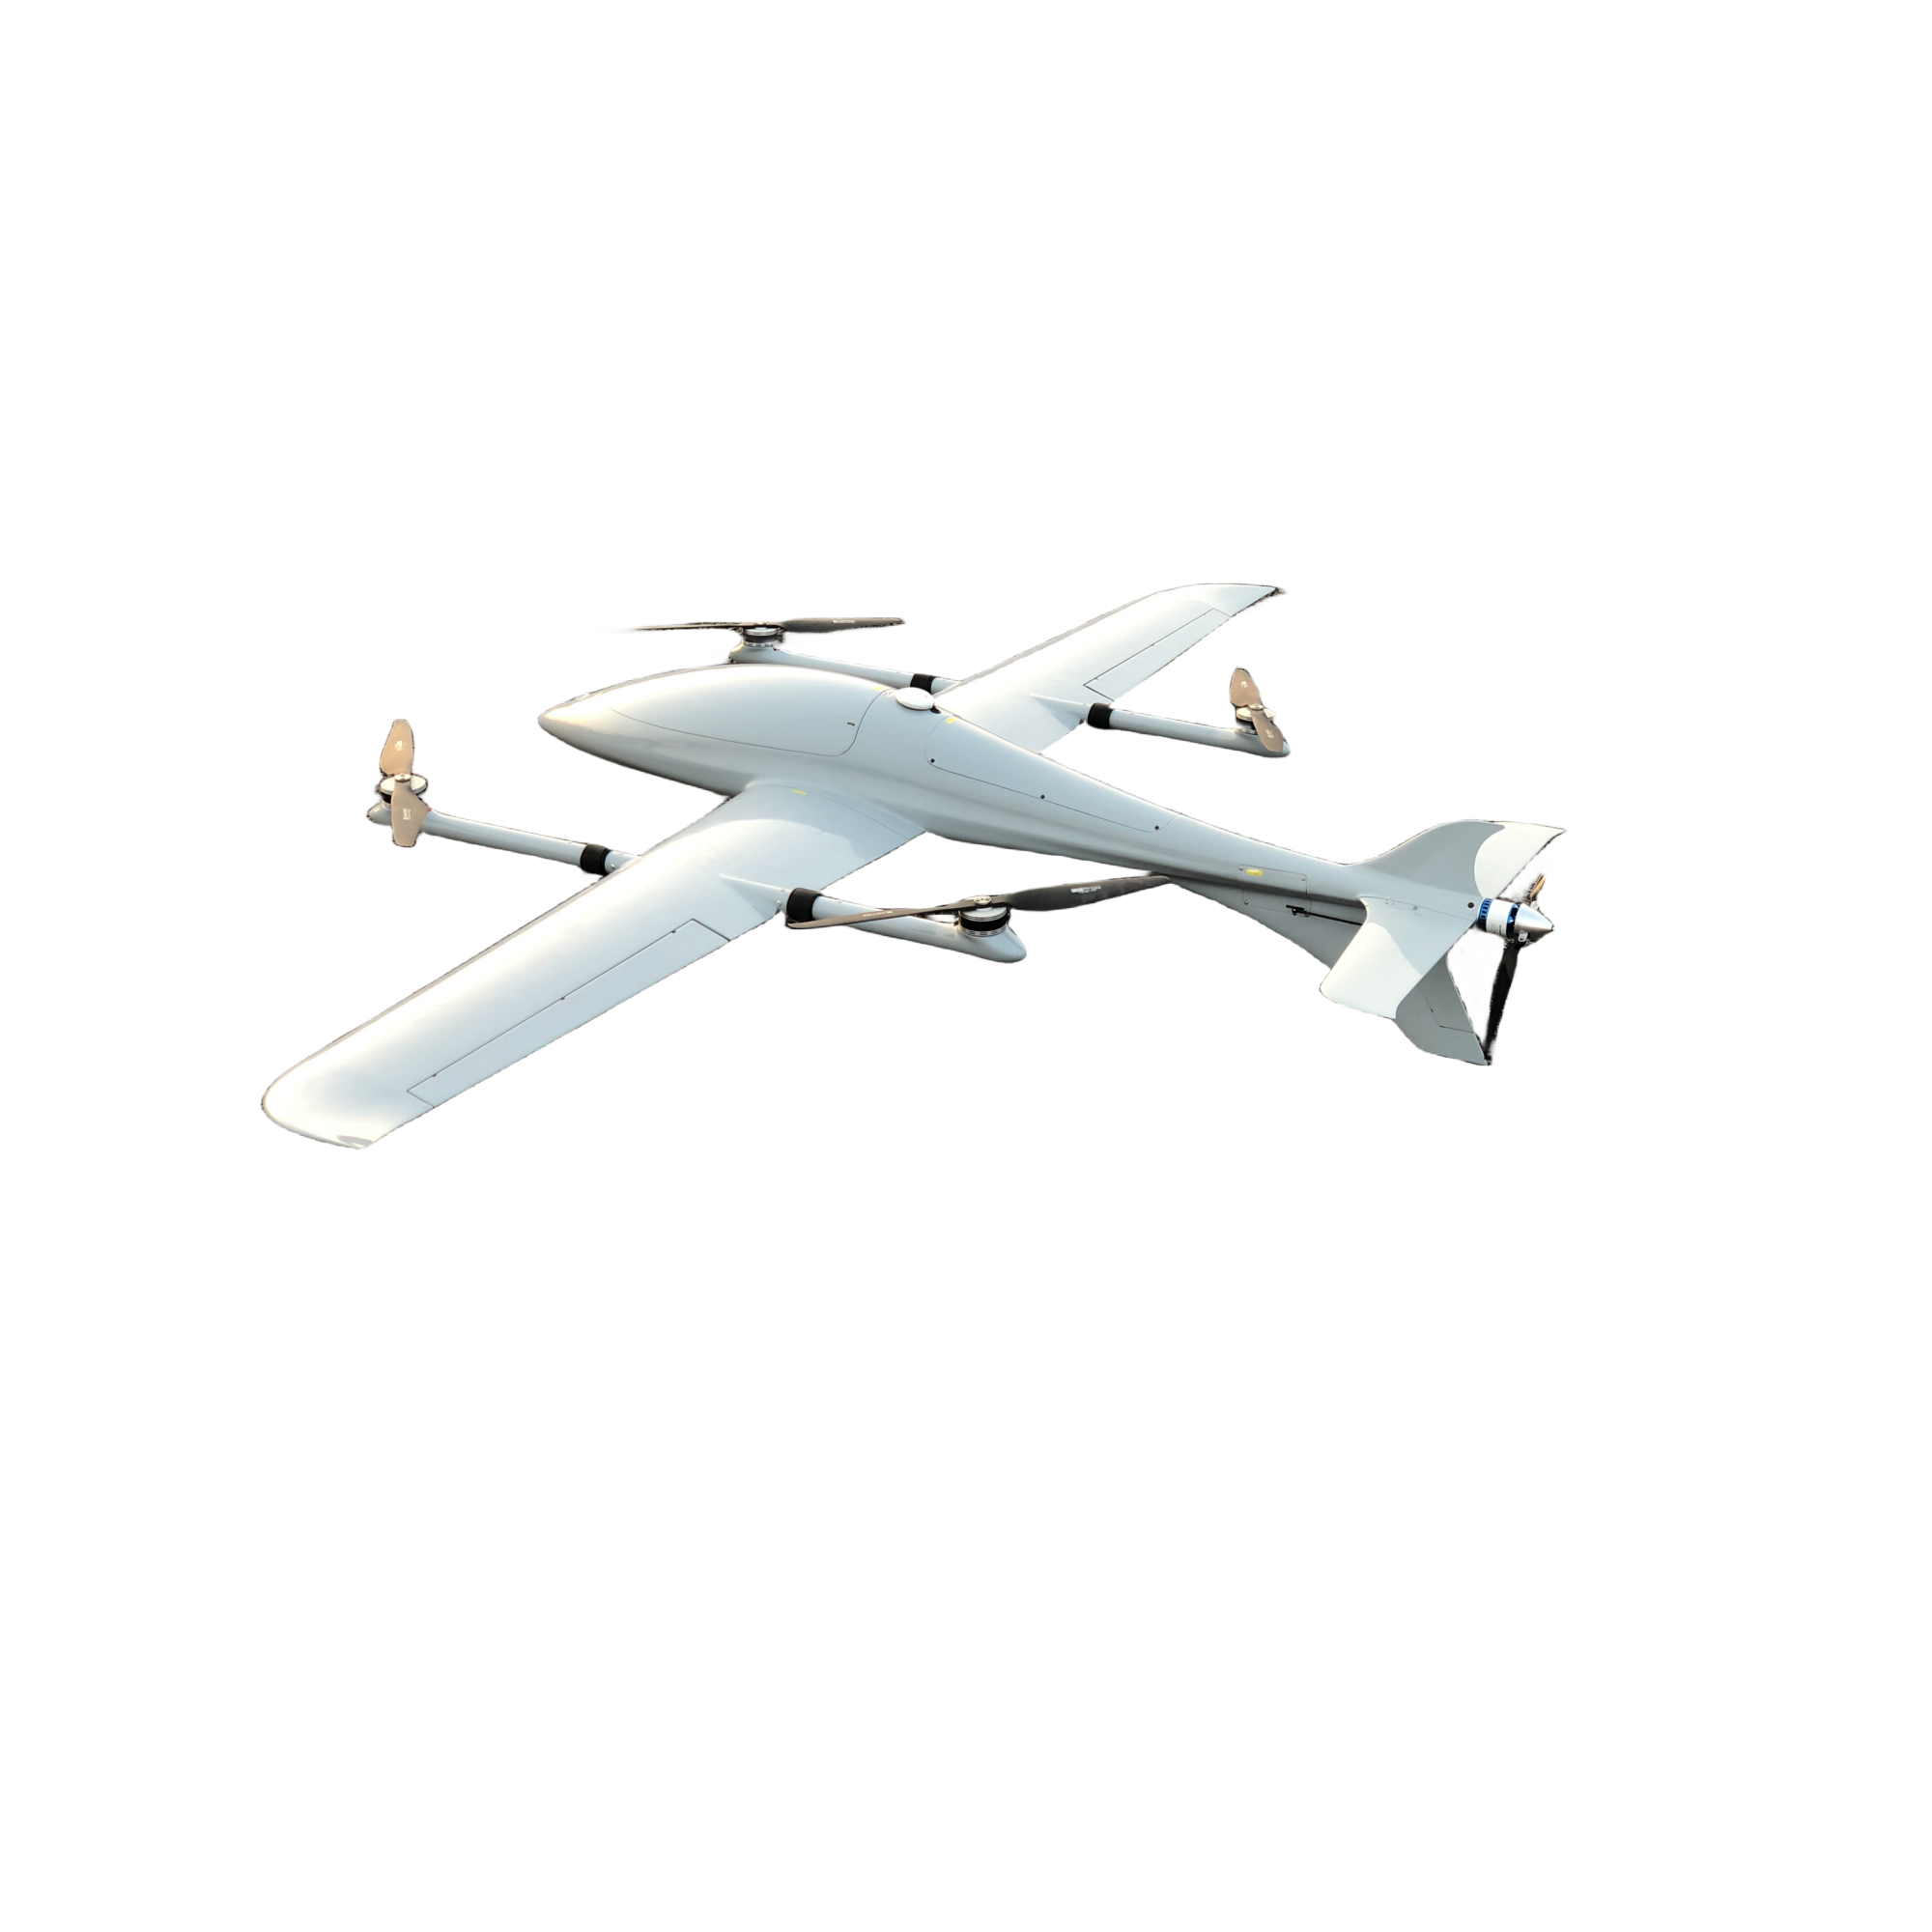 Phoenix VTOL UAV - Compacted UAV 1 KG Mission Payload 3 Hours Endurances - Unmanned RC